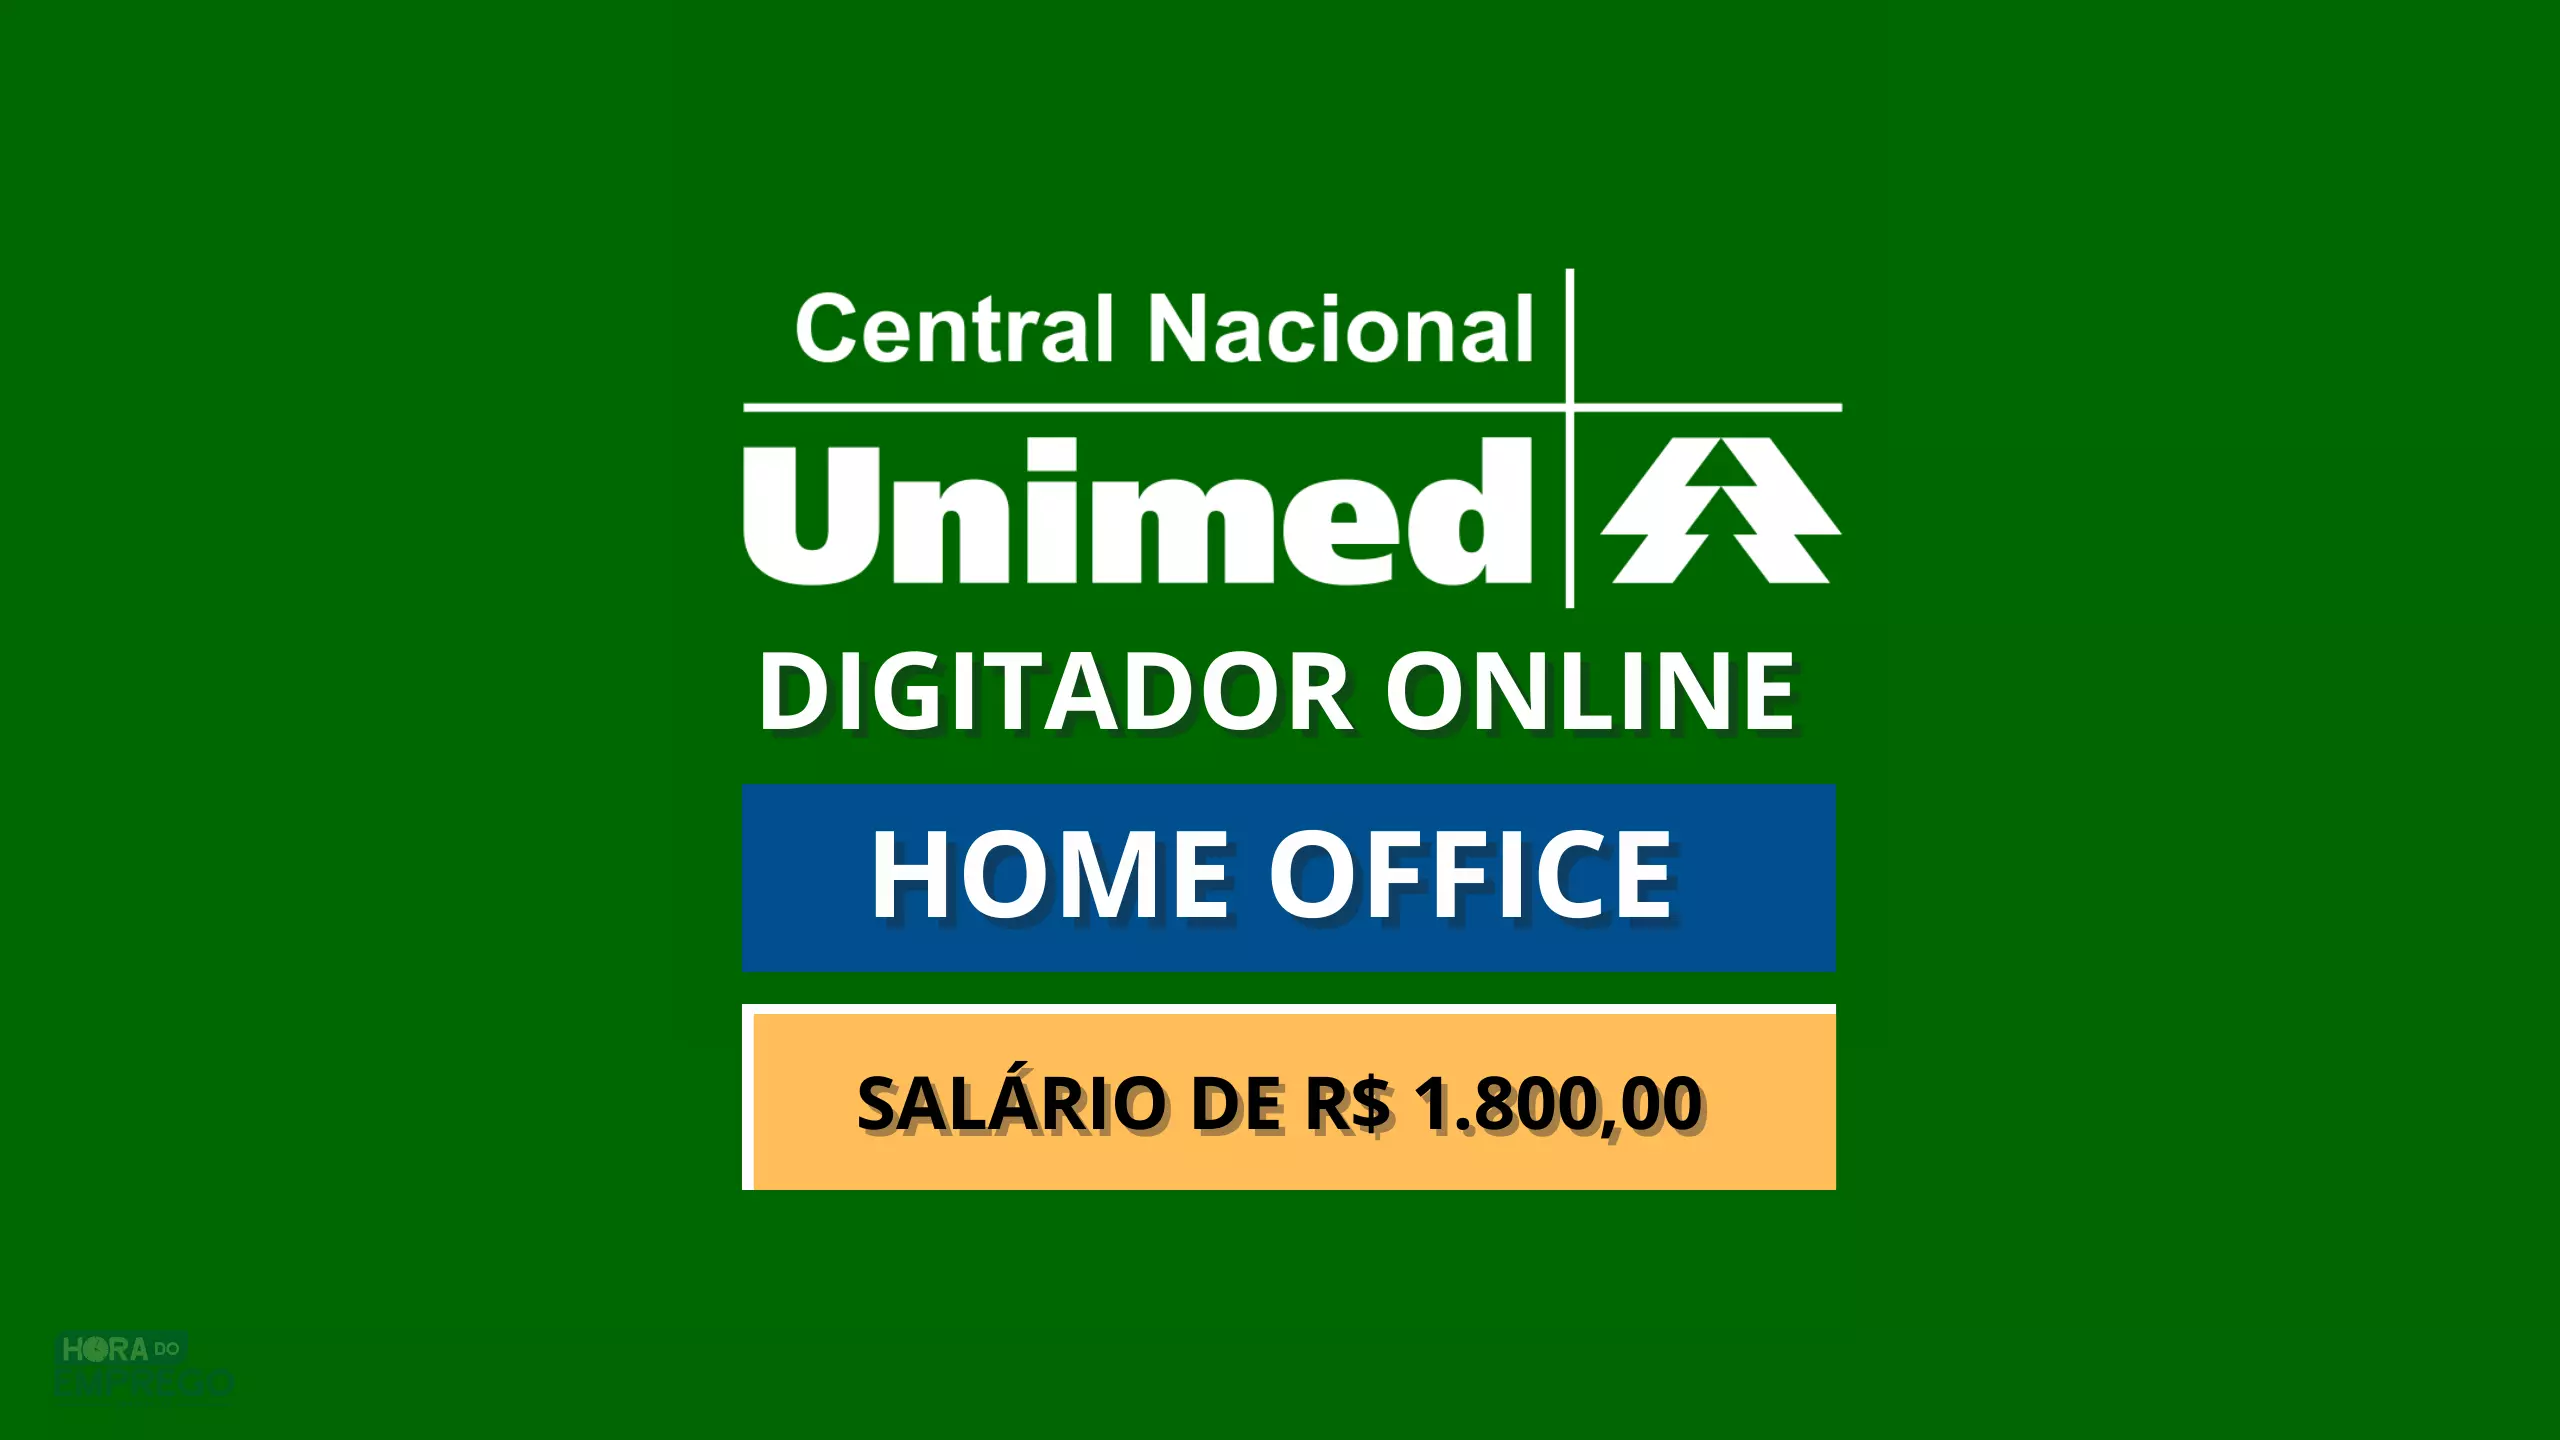 Unimed Nacional anuncia vaga 100% HOME OFFICE para DIGITADOR com salário de R$ 1.800,00 e Alimentação R$ 800,00